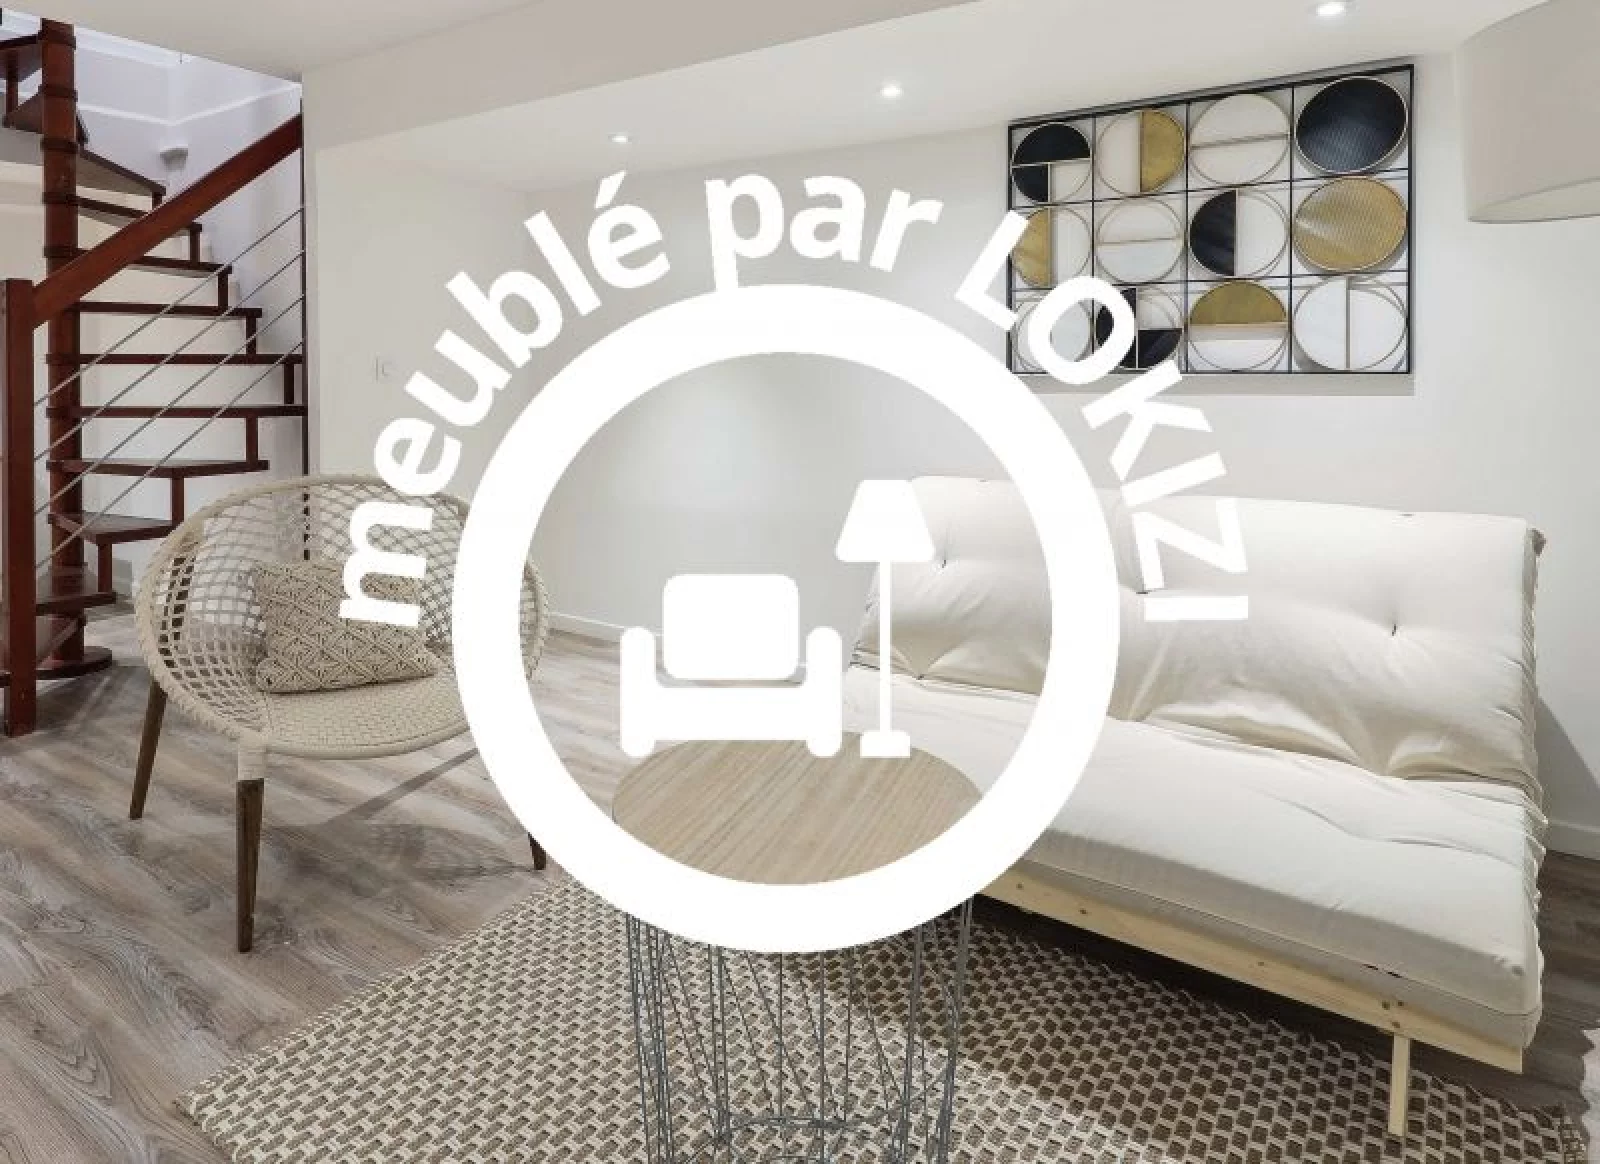 Location appartement meublé 4 pièces 92m² (Paris 16 / Trocadéro)